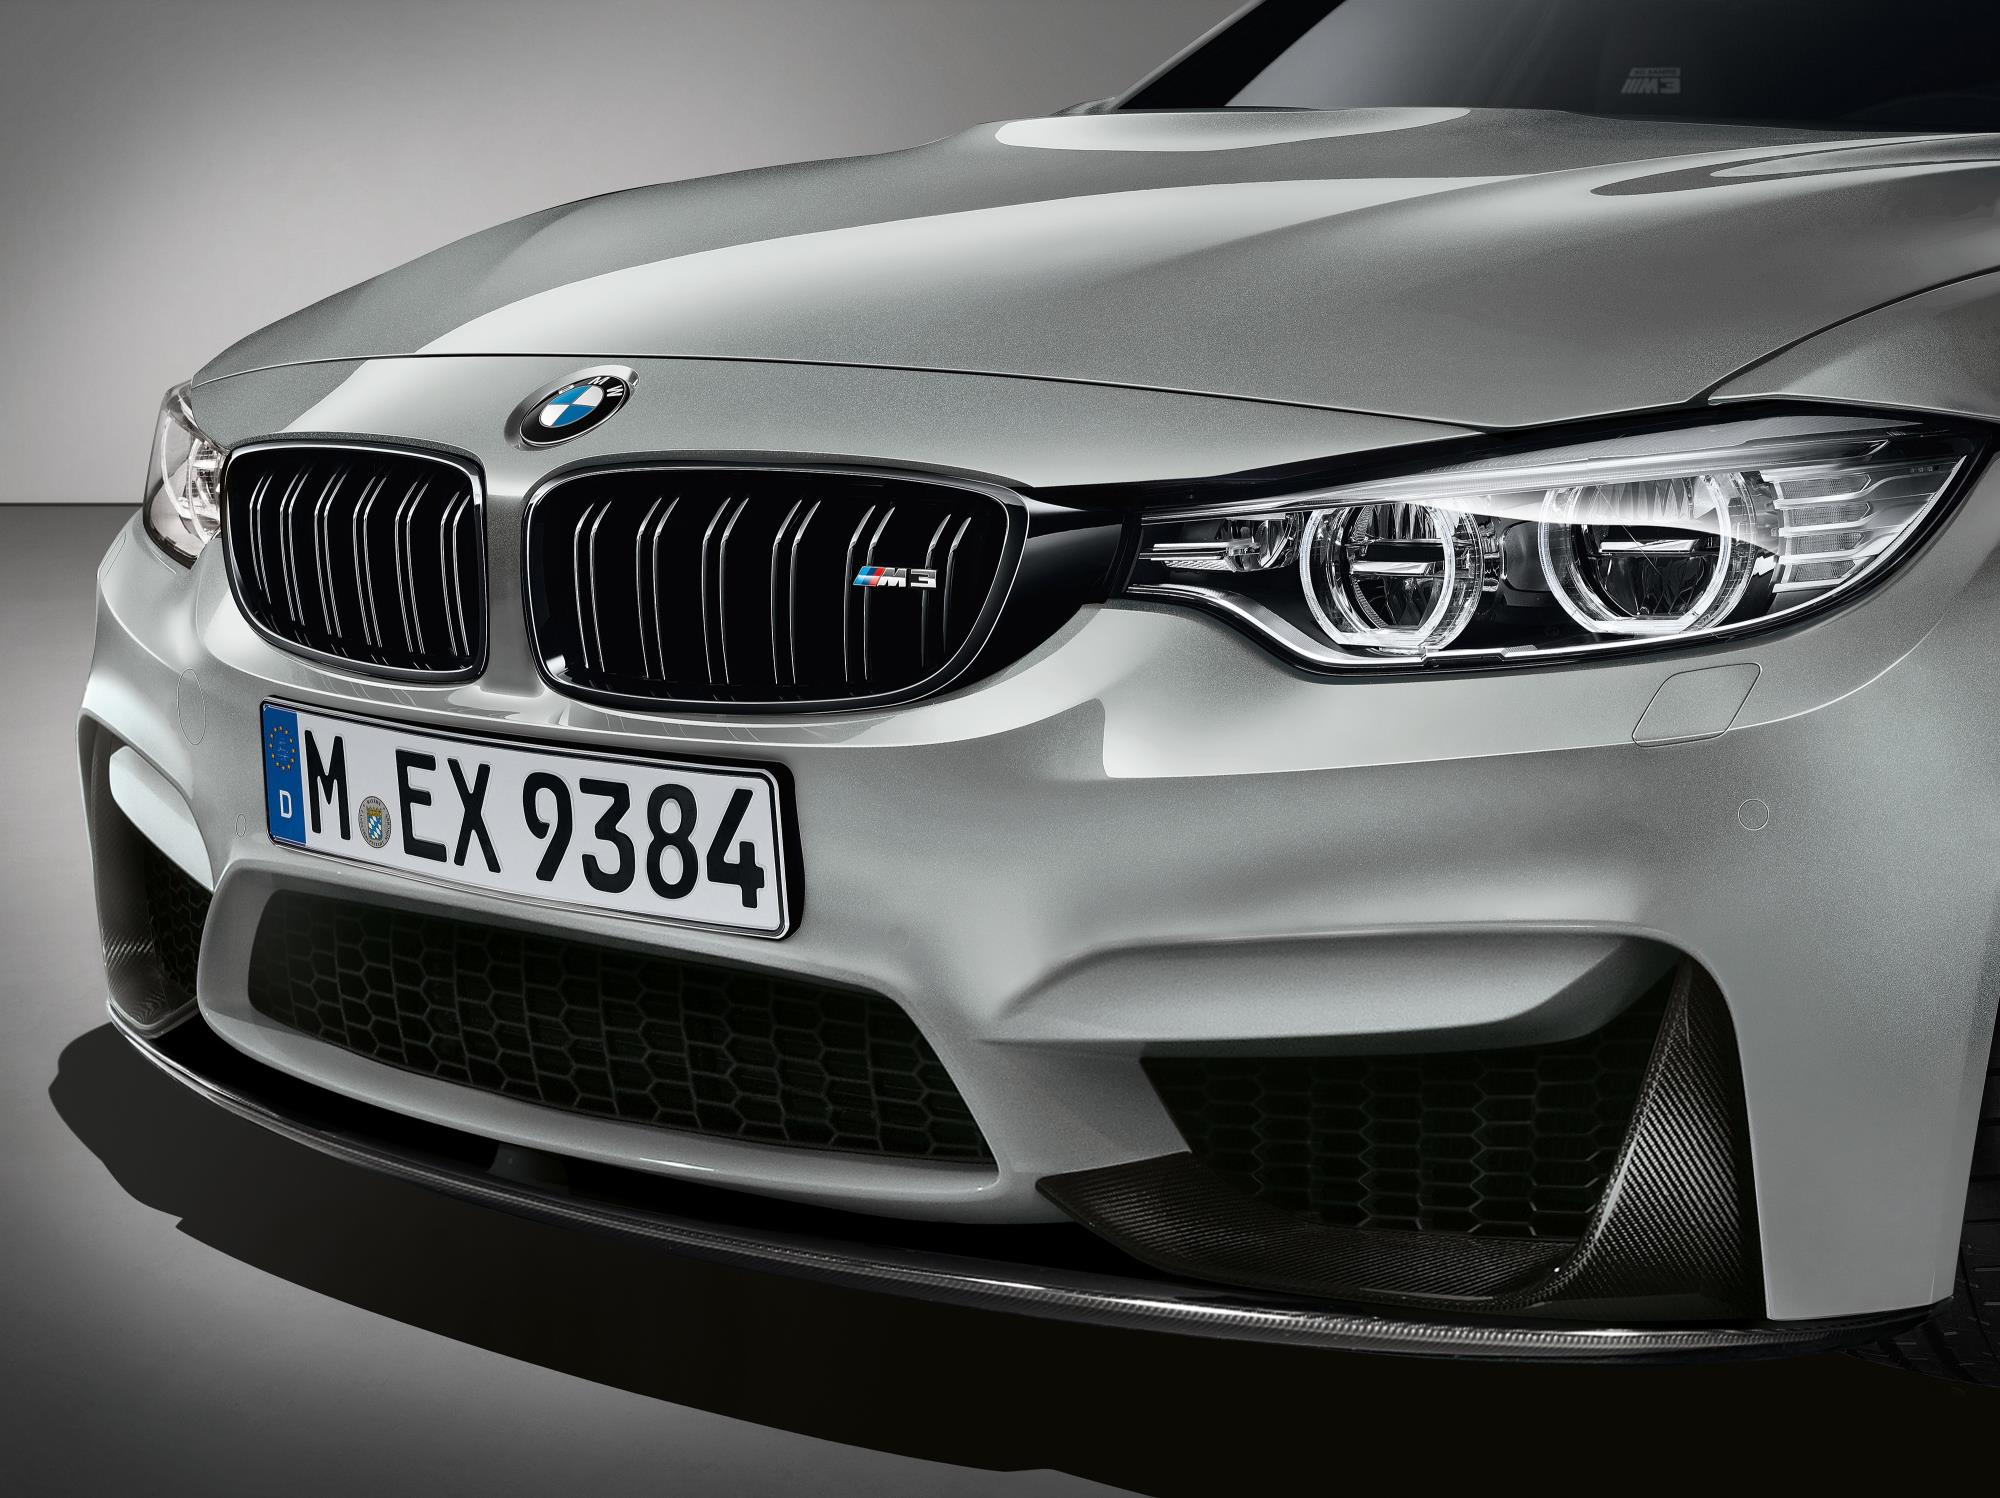 BMW выпустил специальное издание M3 в честь празднования 30-й годовщины M3 в качестве модели BMW. Метко названный BMW M3 30 Jahre Edition основан на стандартном M3 в пакете Competition. 30 Jahre Edition, однако, получает 444 лошадиных сил от его 3,0-